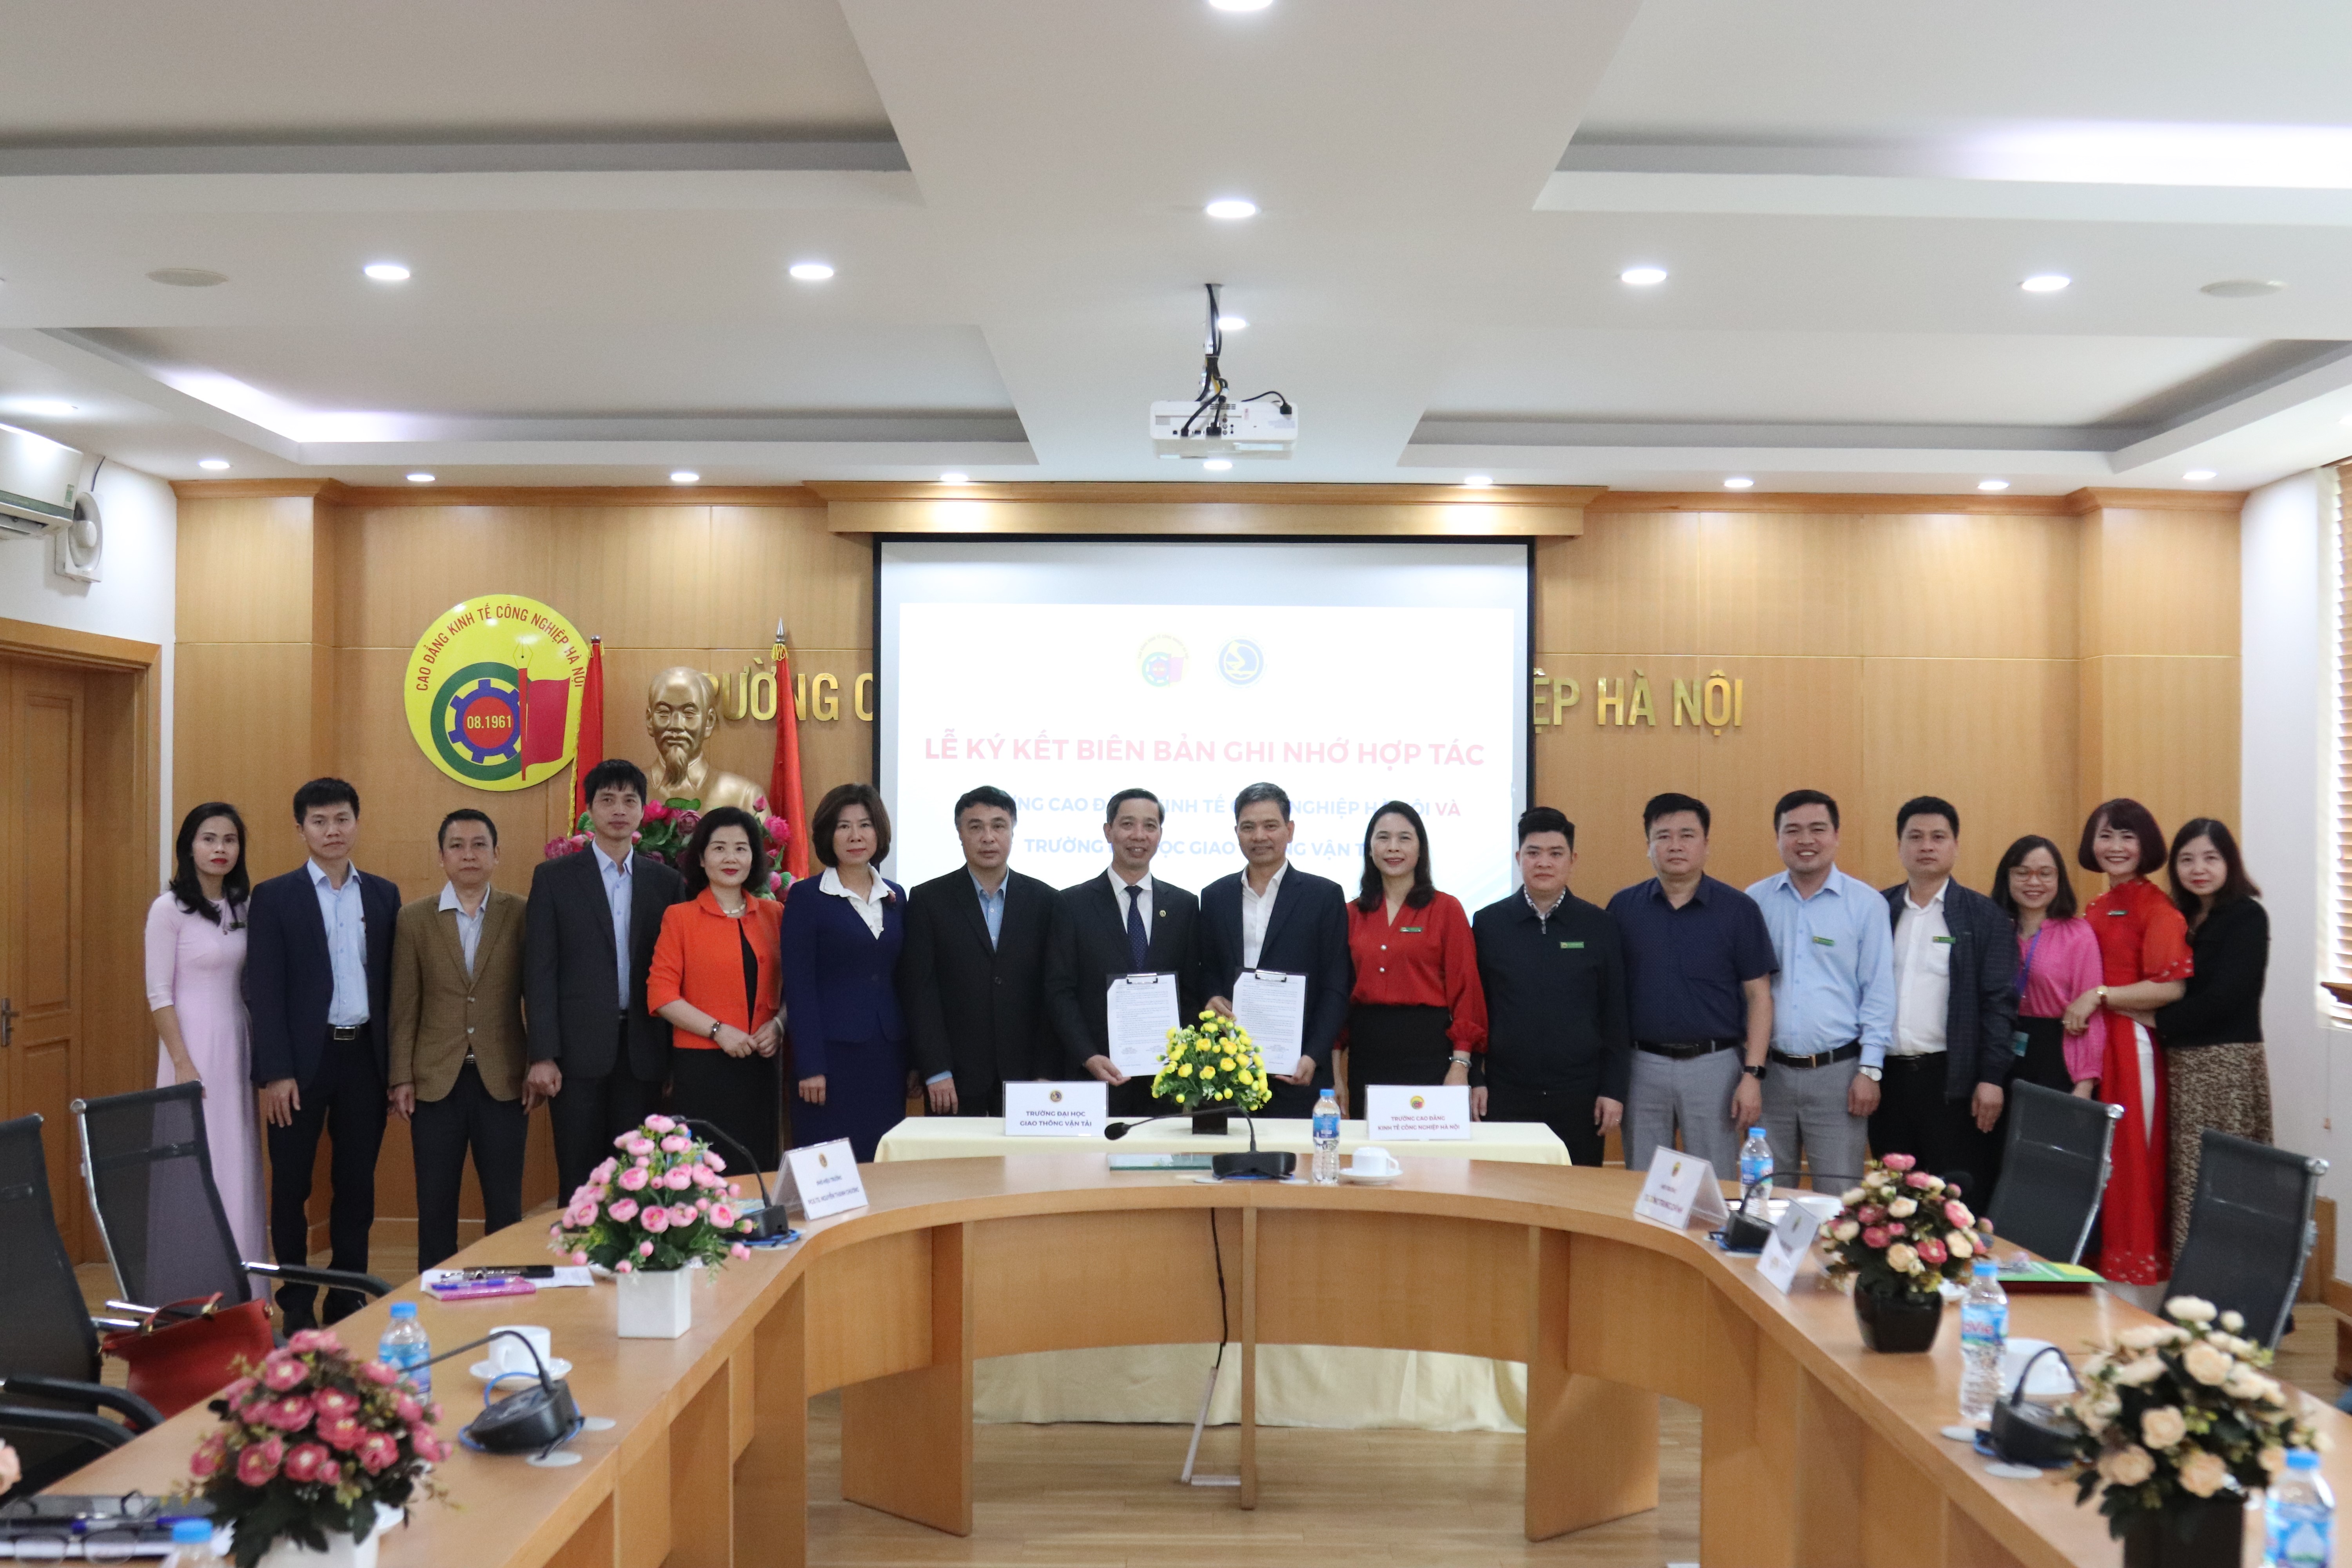 Lễ ký kết biên bản ghi nhớ hợp tác giữa Trường Đại học Giao thông vận tải và Trường Cao đẳng Kinh tế Công nghiệp Hà Nội